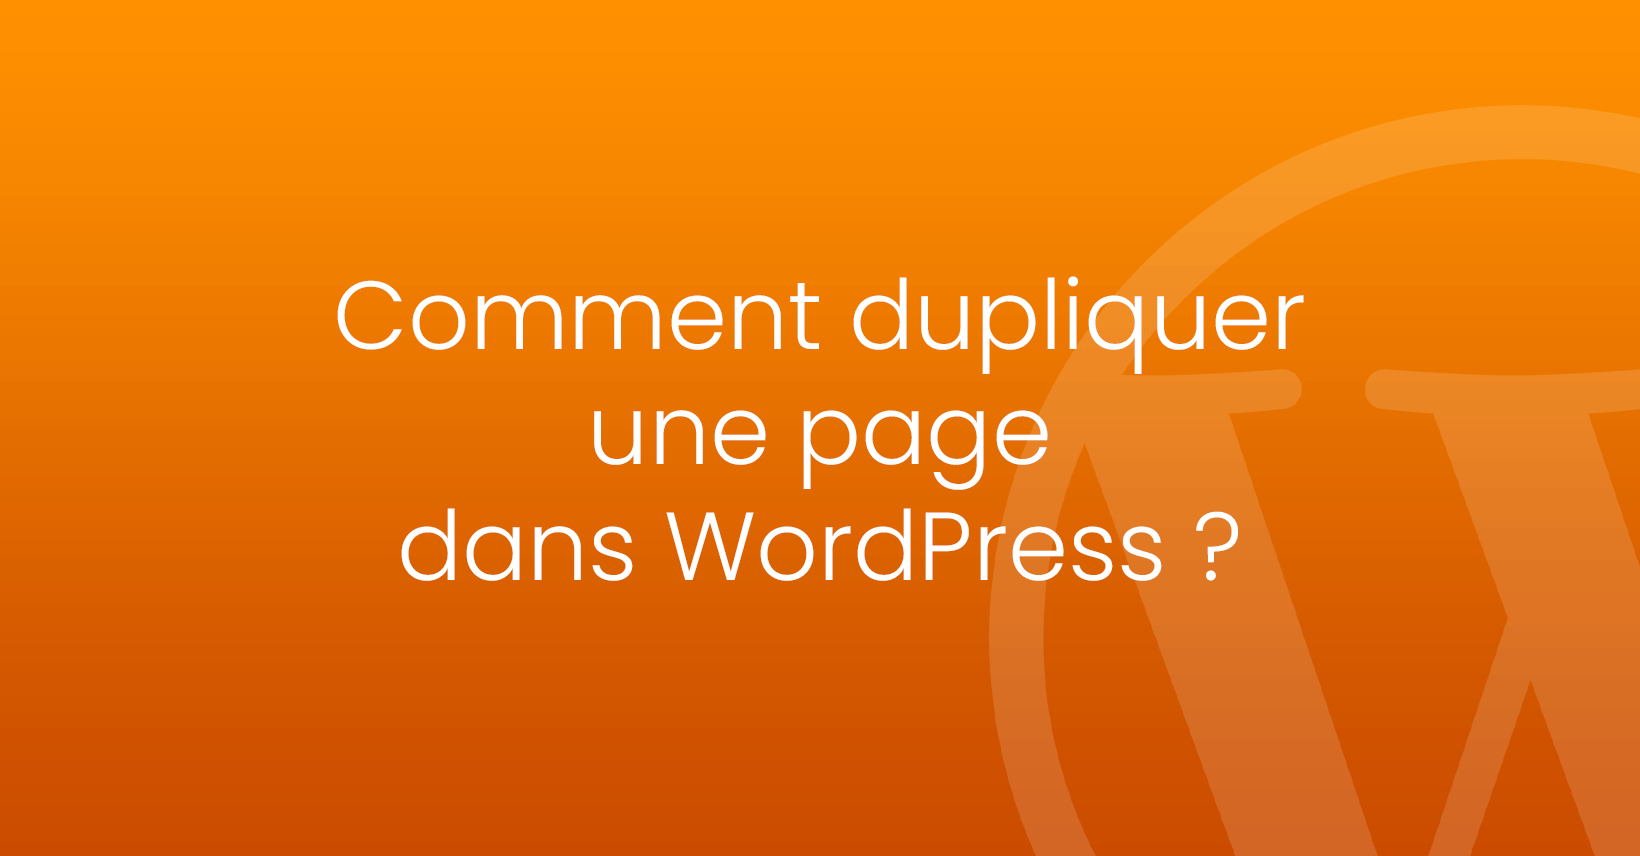 Comment dupliquer une page dans WordPress ?